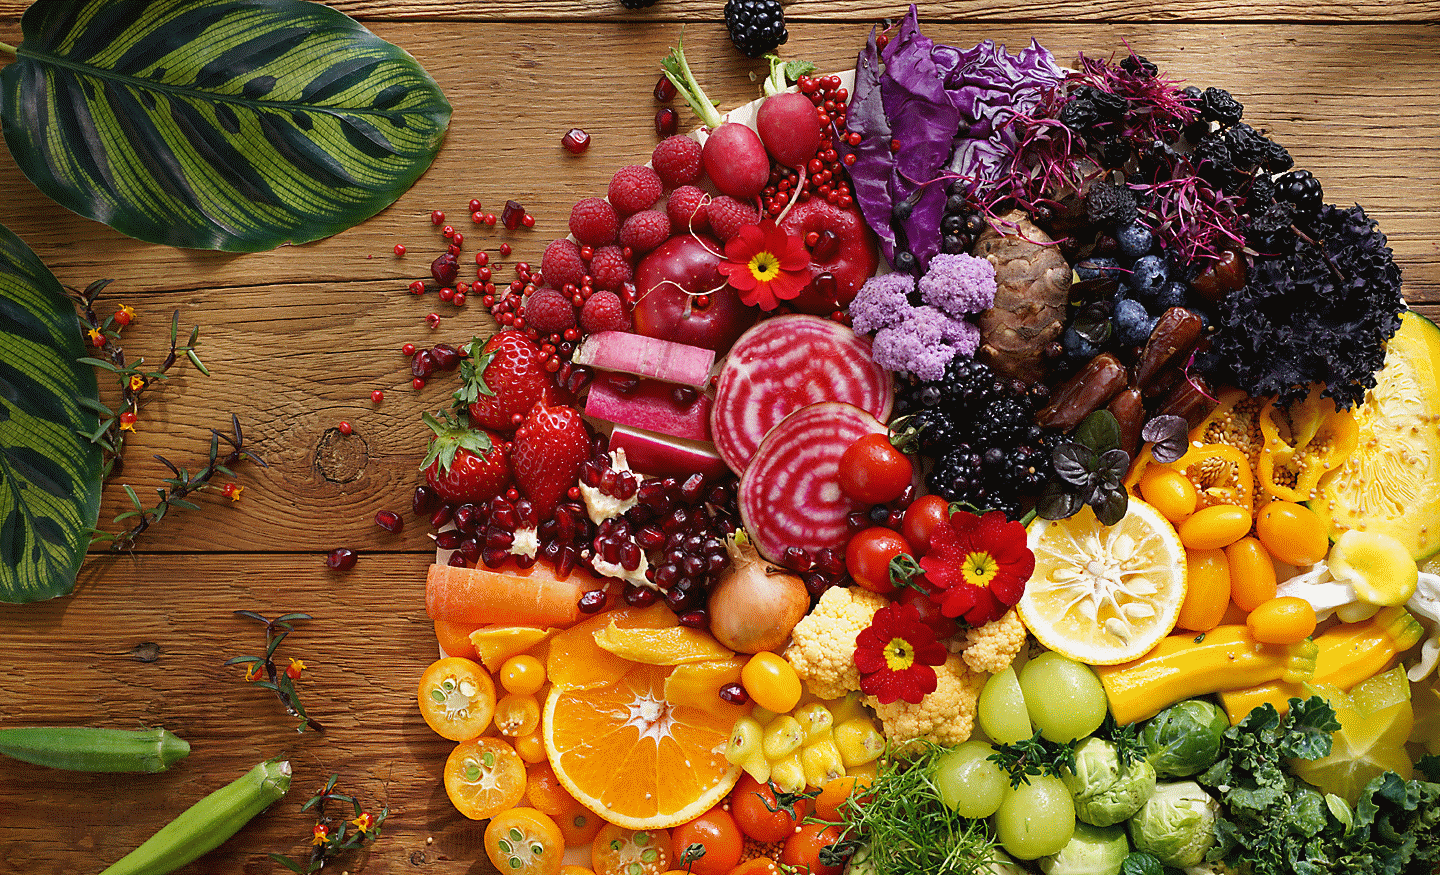 Billede af farverige grøntsager og frugt, der er taget med dette objektiv med høj opløsning på hele motivet